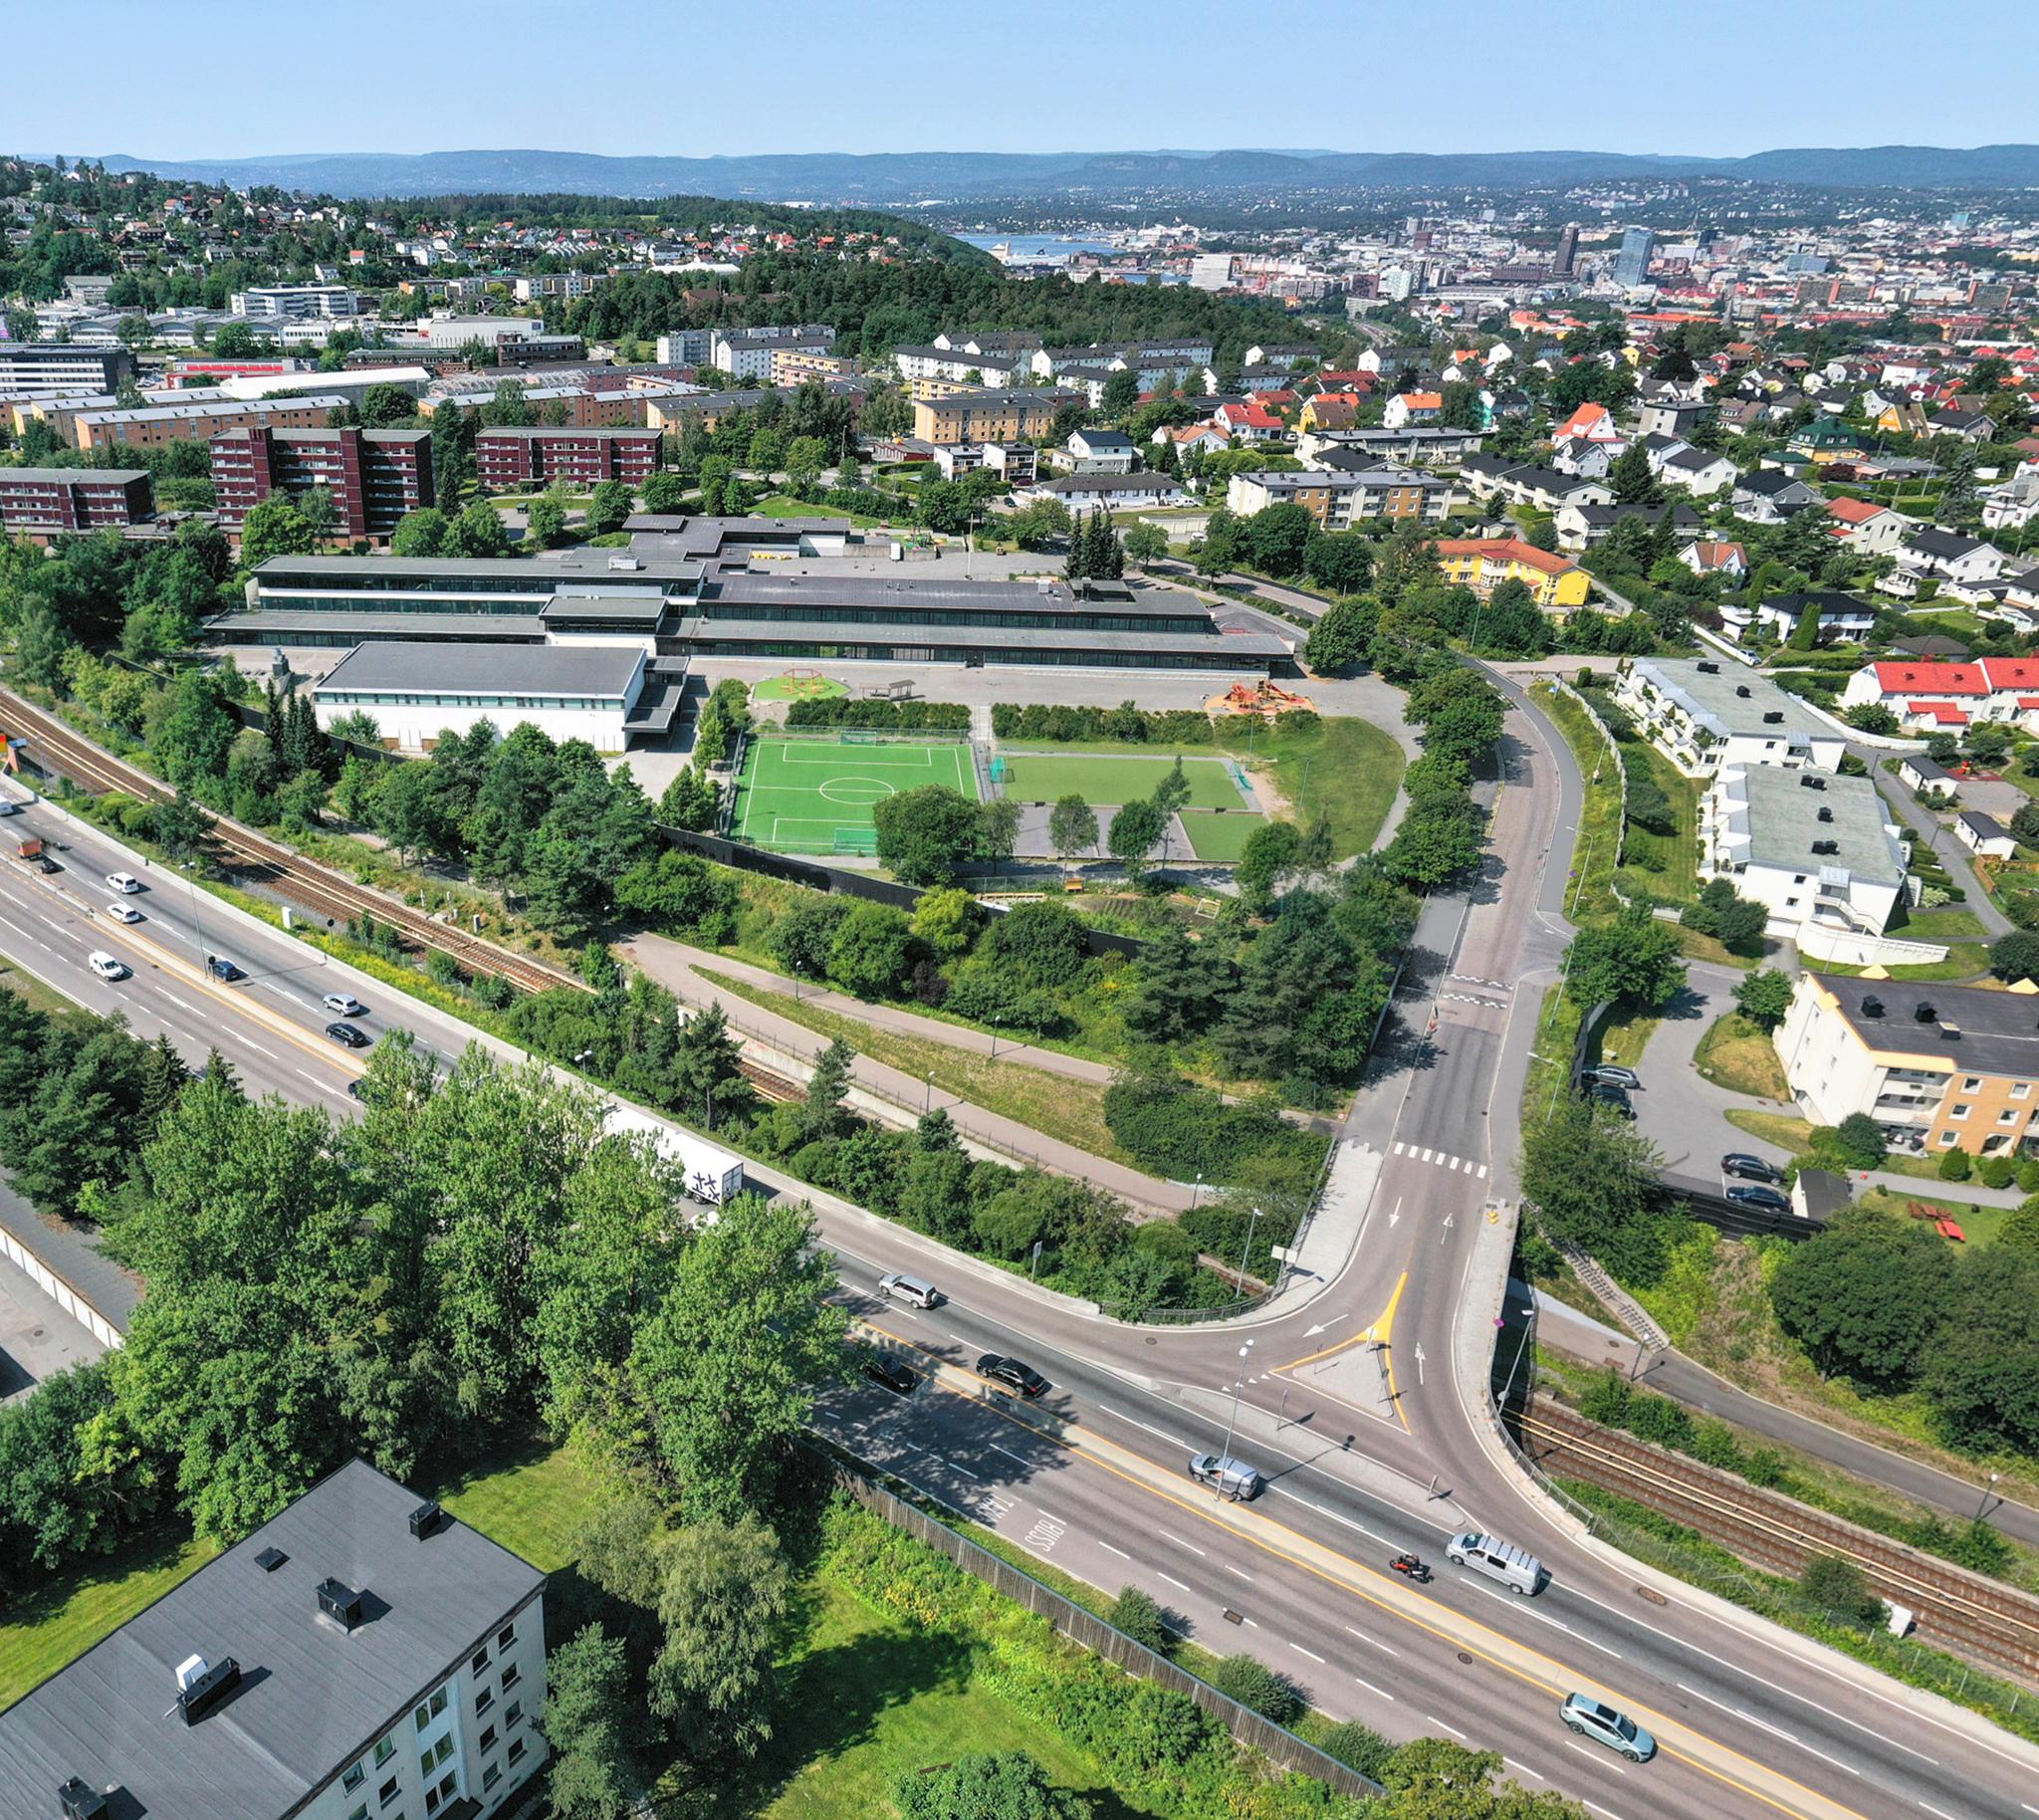 Potensialet for fremtidig byutvikling langs det som kan bli et av de største parkområdene i Oslo, kan bidra vesentlig i den høye etterspørselen etter nye boliger i byen vår, mener Adrian Lombardo.